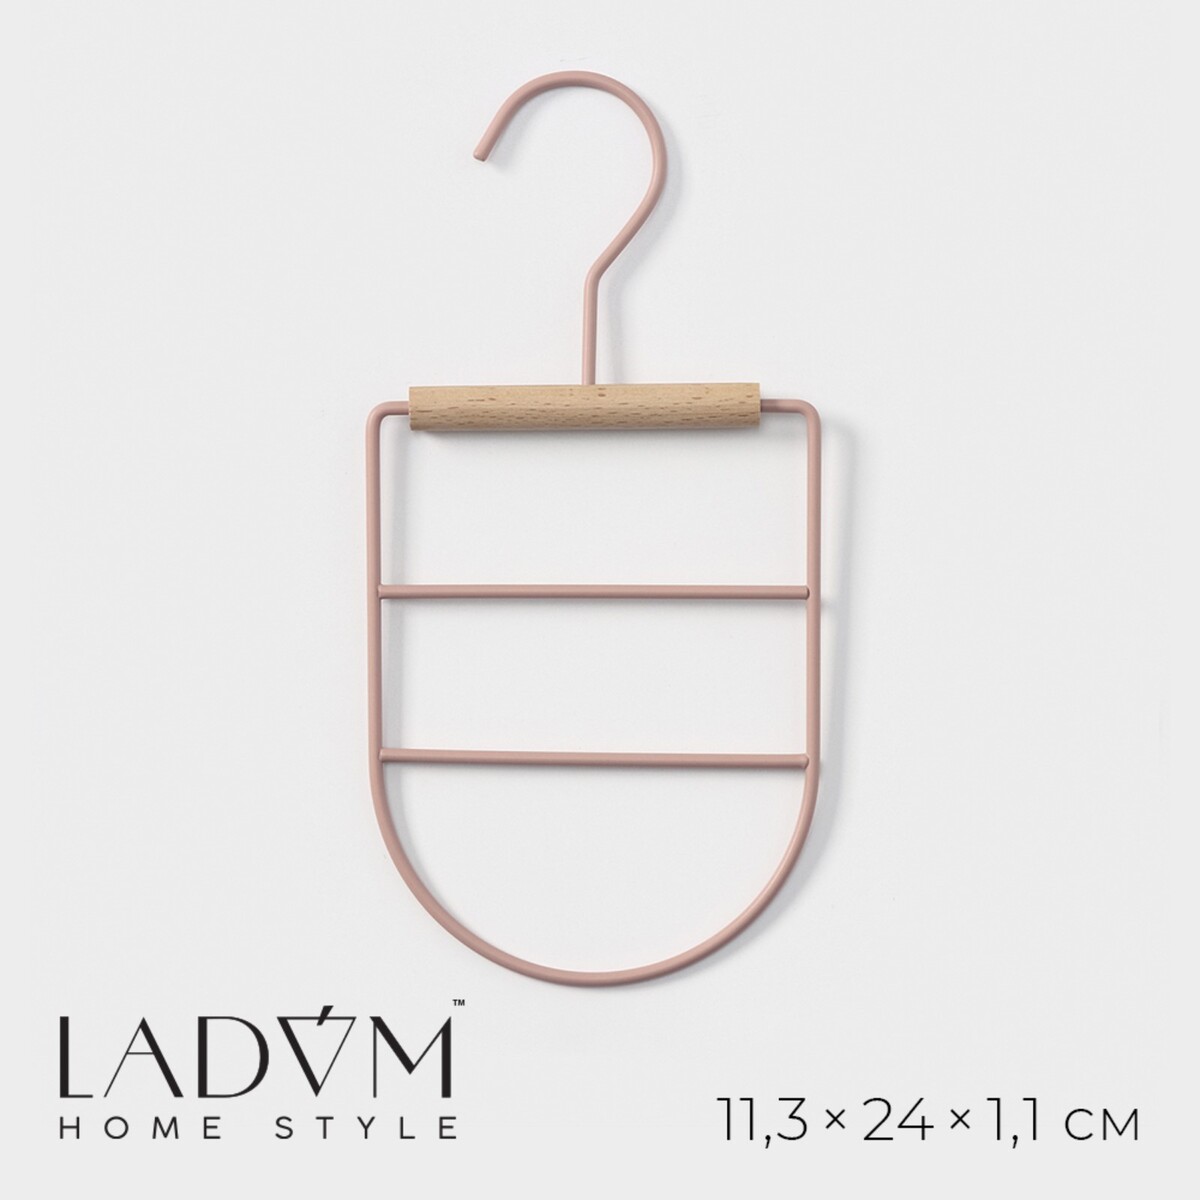 Вешалка органайзер для ремней и шарфов многоуровневая ladо́m laconique, 11,5×23×1,1 см, цвет розовый плечики вешалка для одежды ladо́m laconique 41 5×22 5×1 см розовый